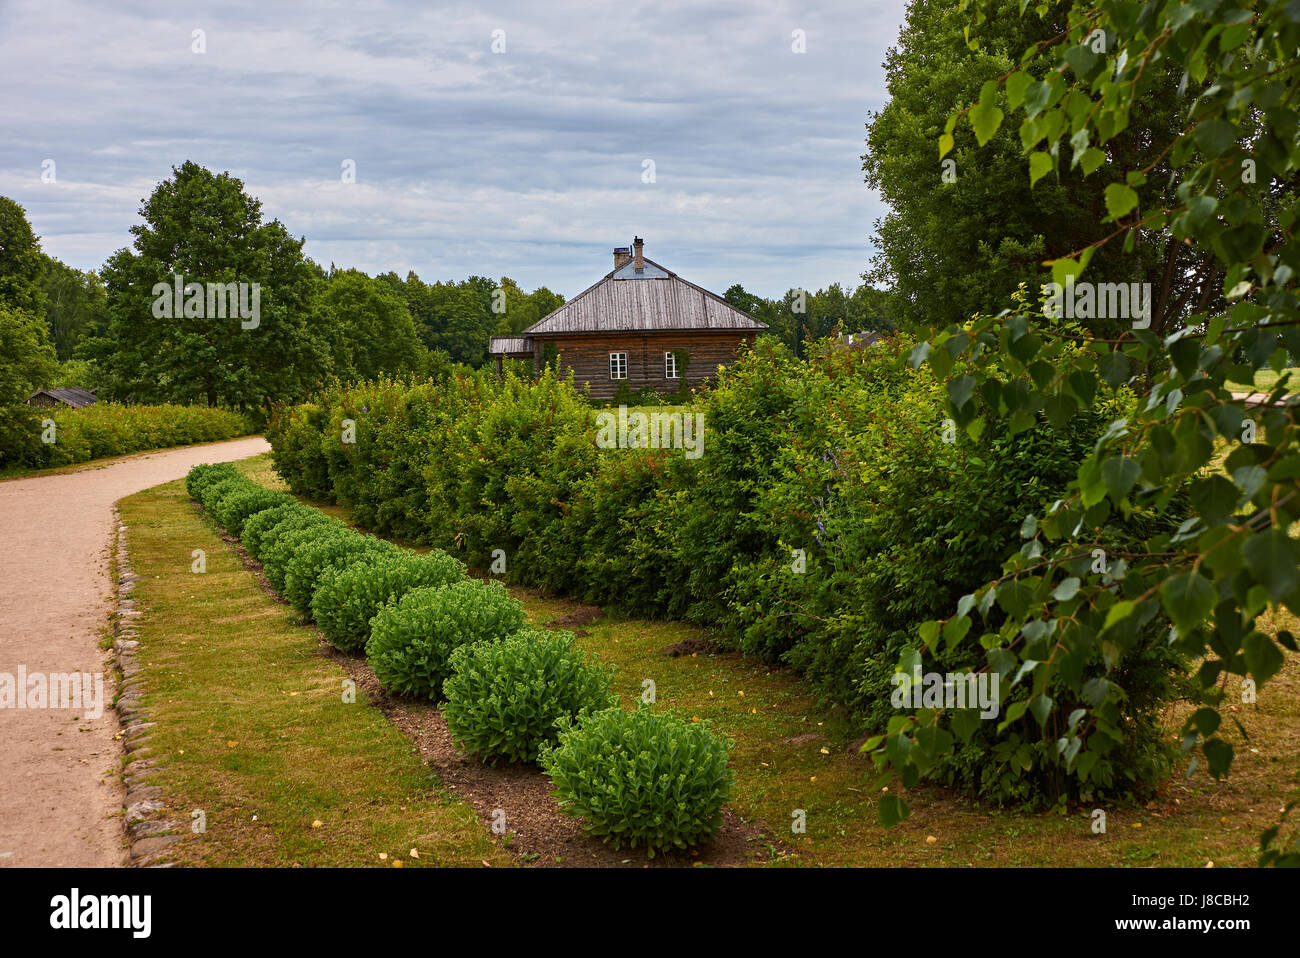 Cespugli verdi a forma di sfera crescere lungo il percorso.sullo sfondo uno piani casa in legno con un tetto inclinato è visibile.La Russia,Pskov Regione Foto Stock